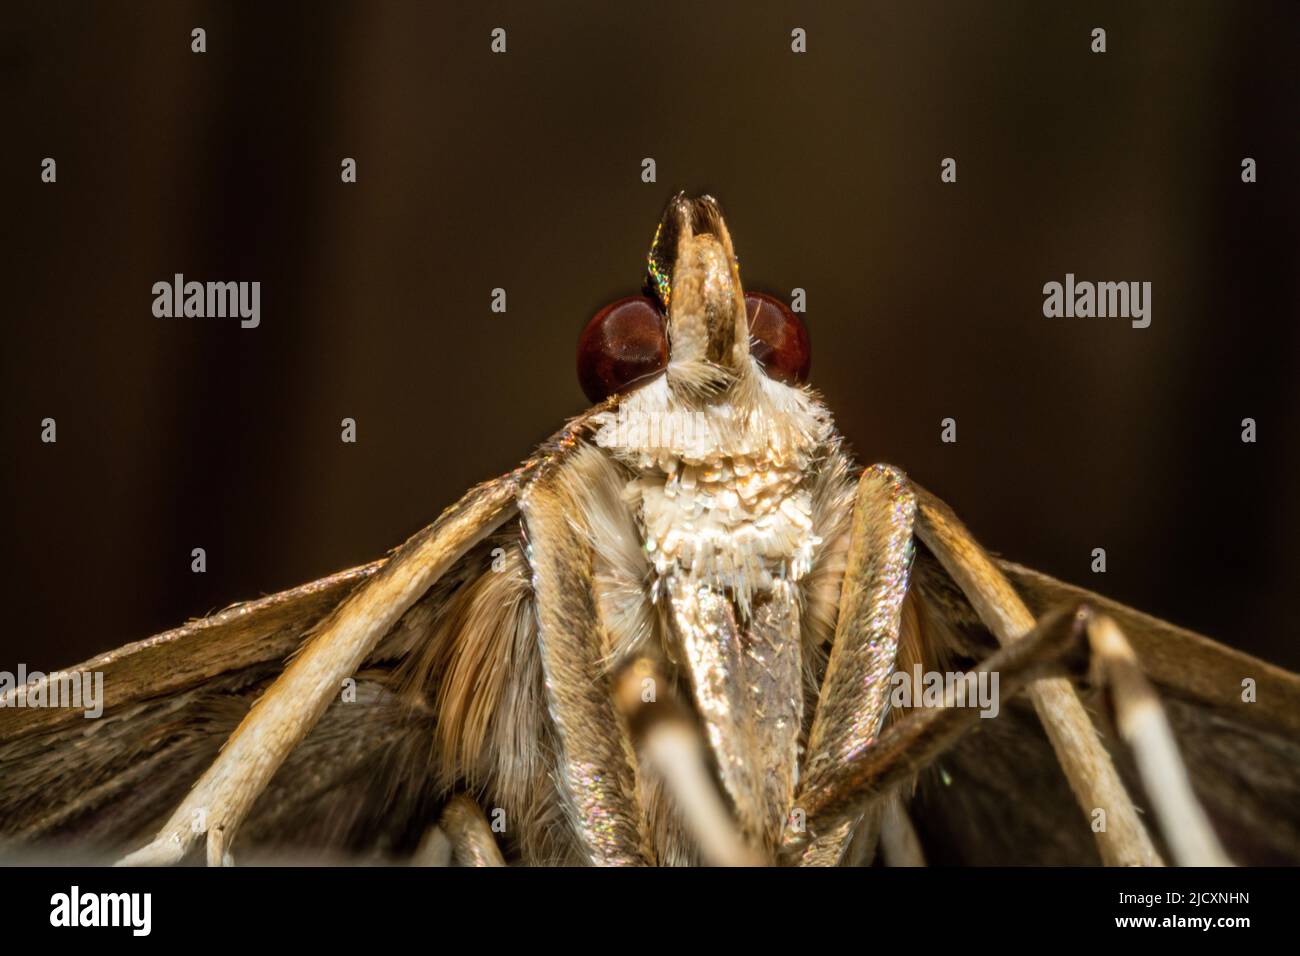 Vista in alto della testa, del seno e delle gambe di una farfalla in ultra macro Foto Stock